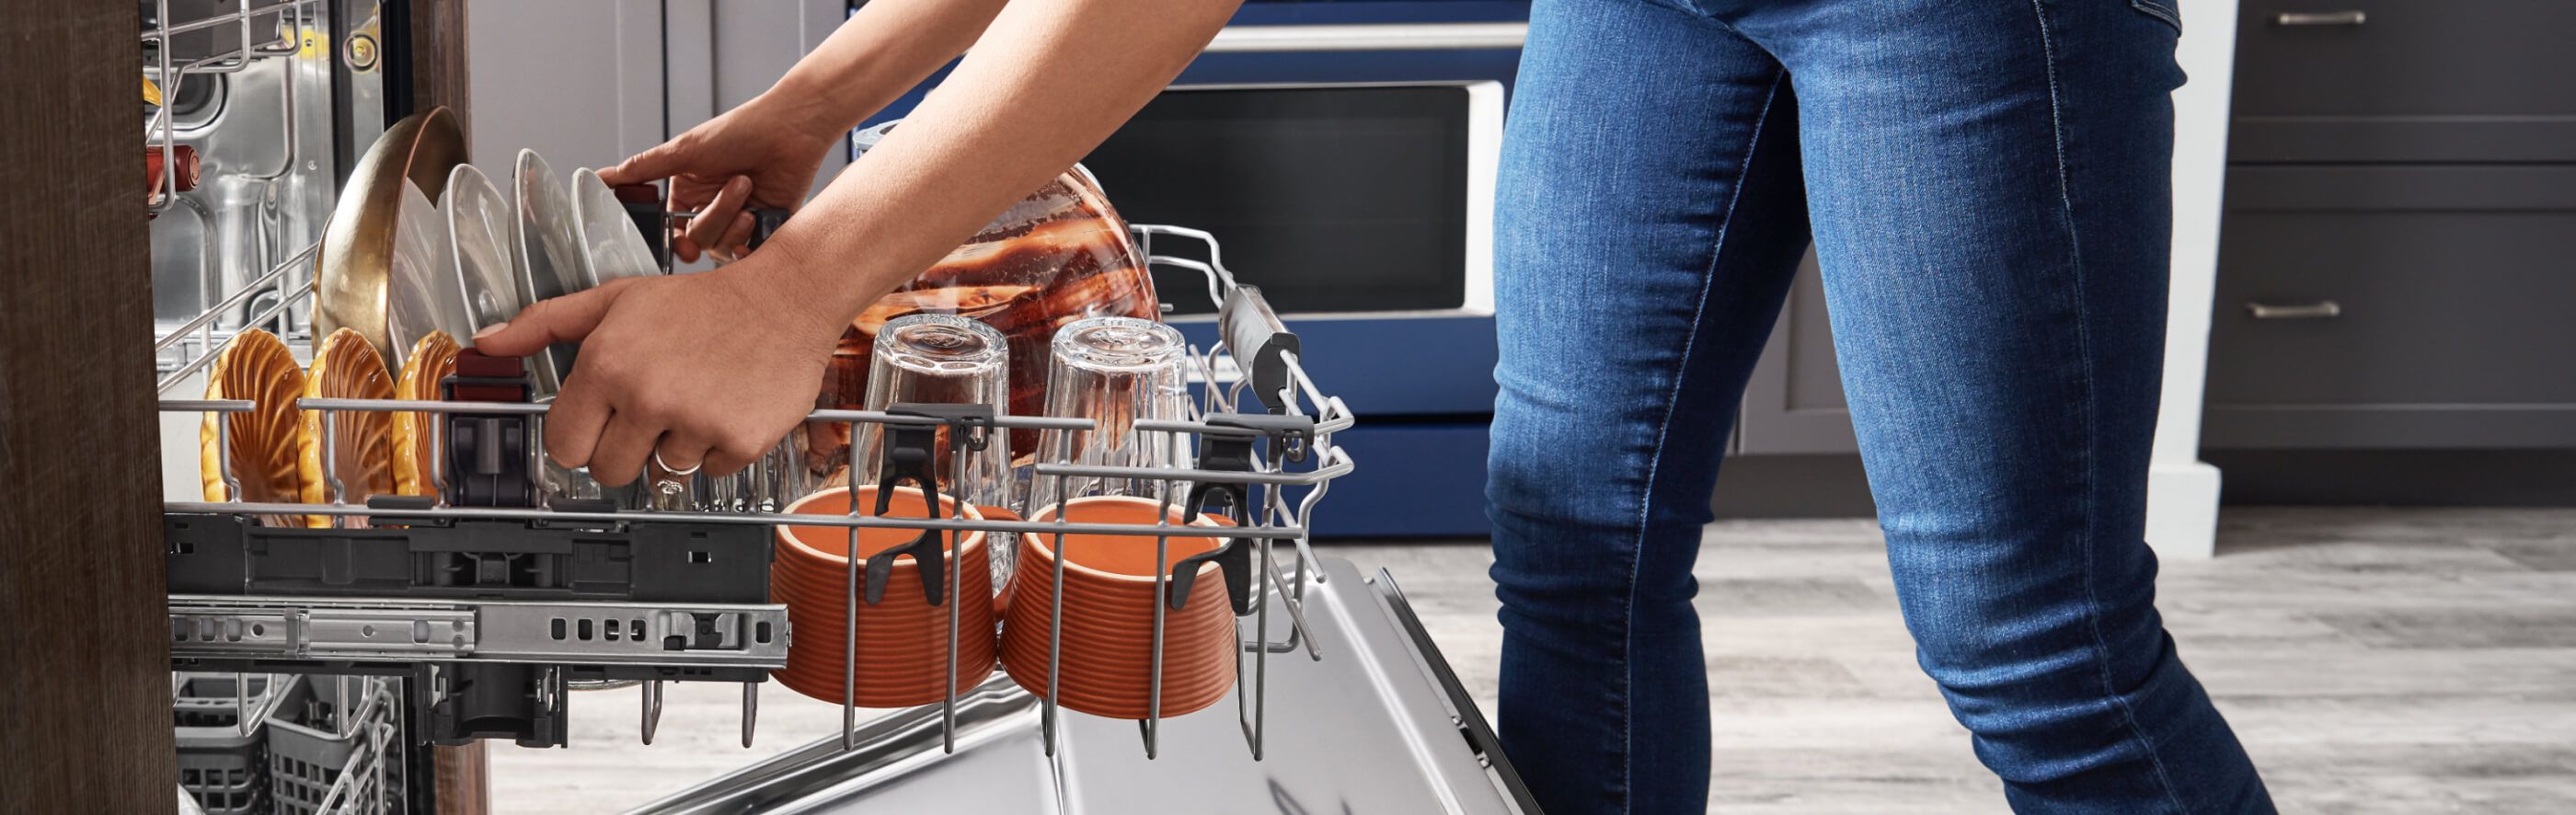 Woman adjusting upper rack in loaded dishwasher